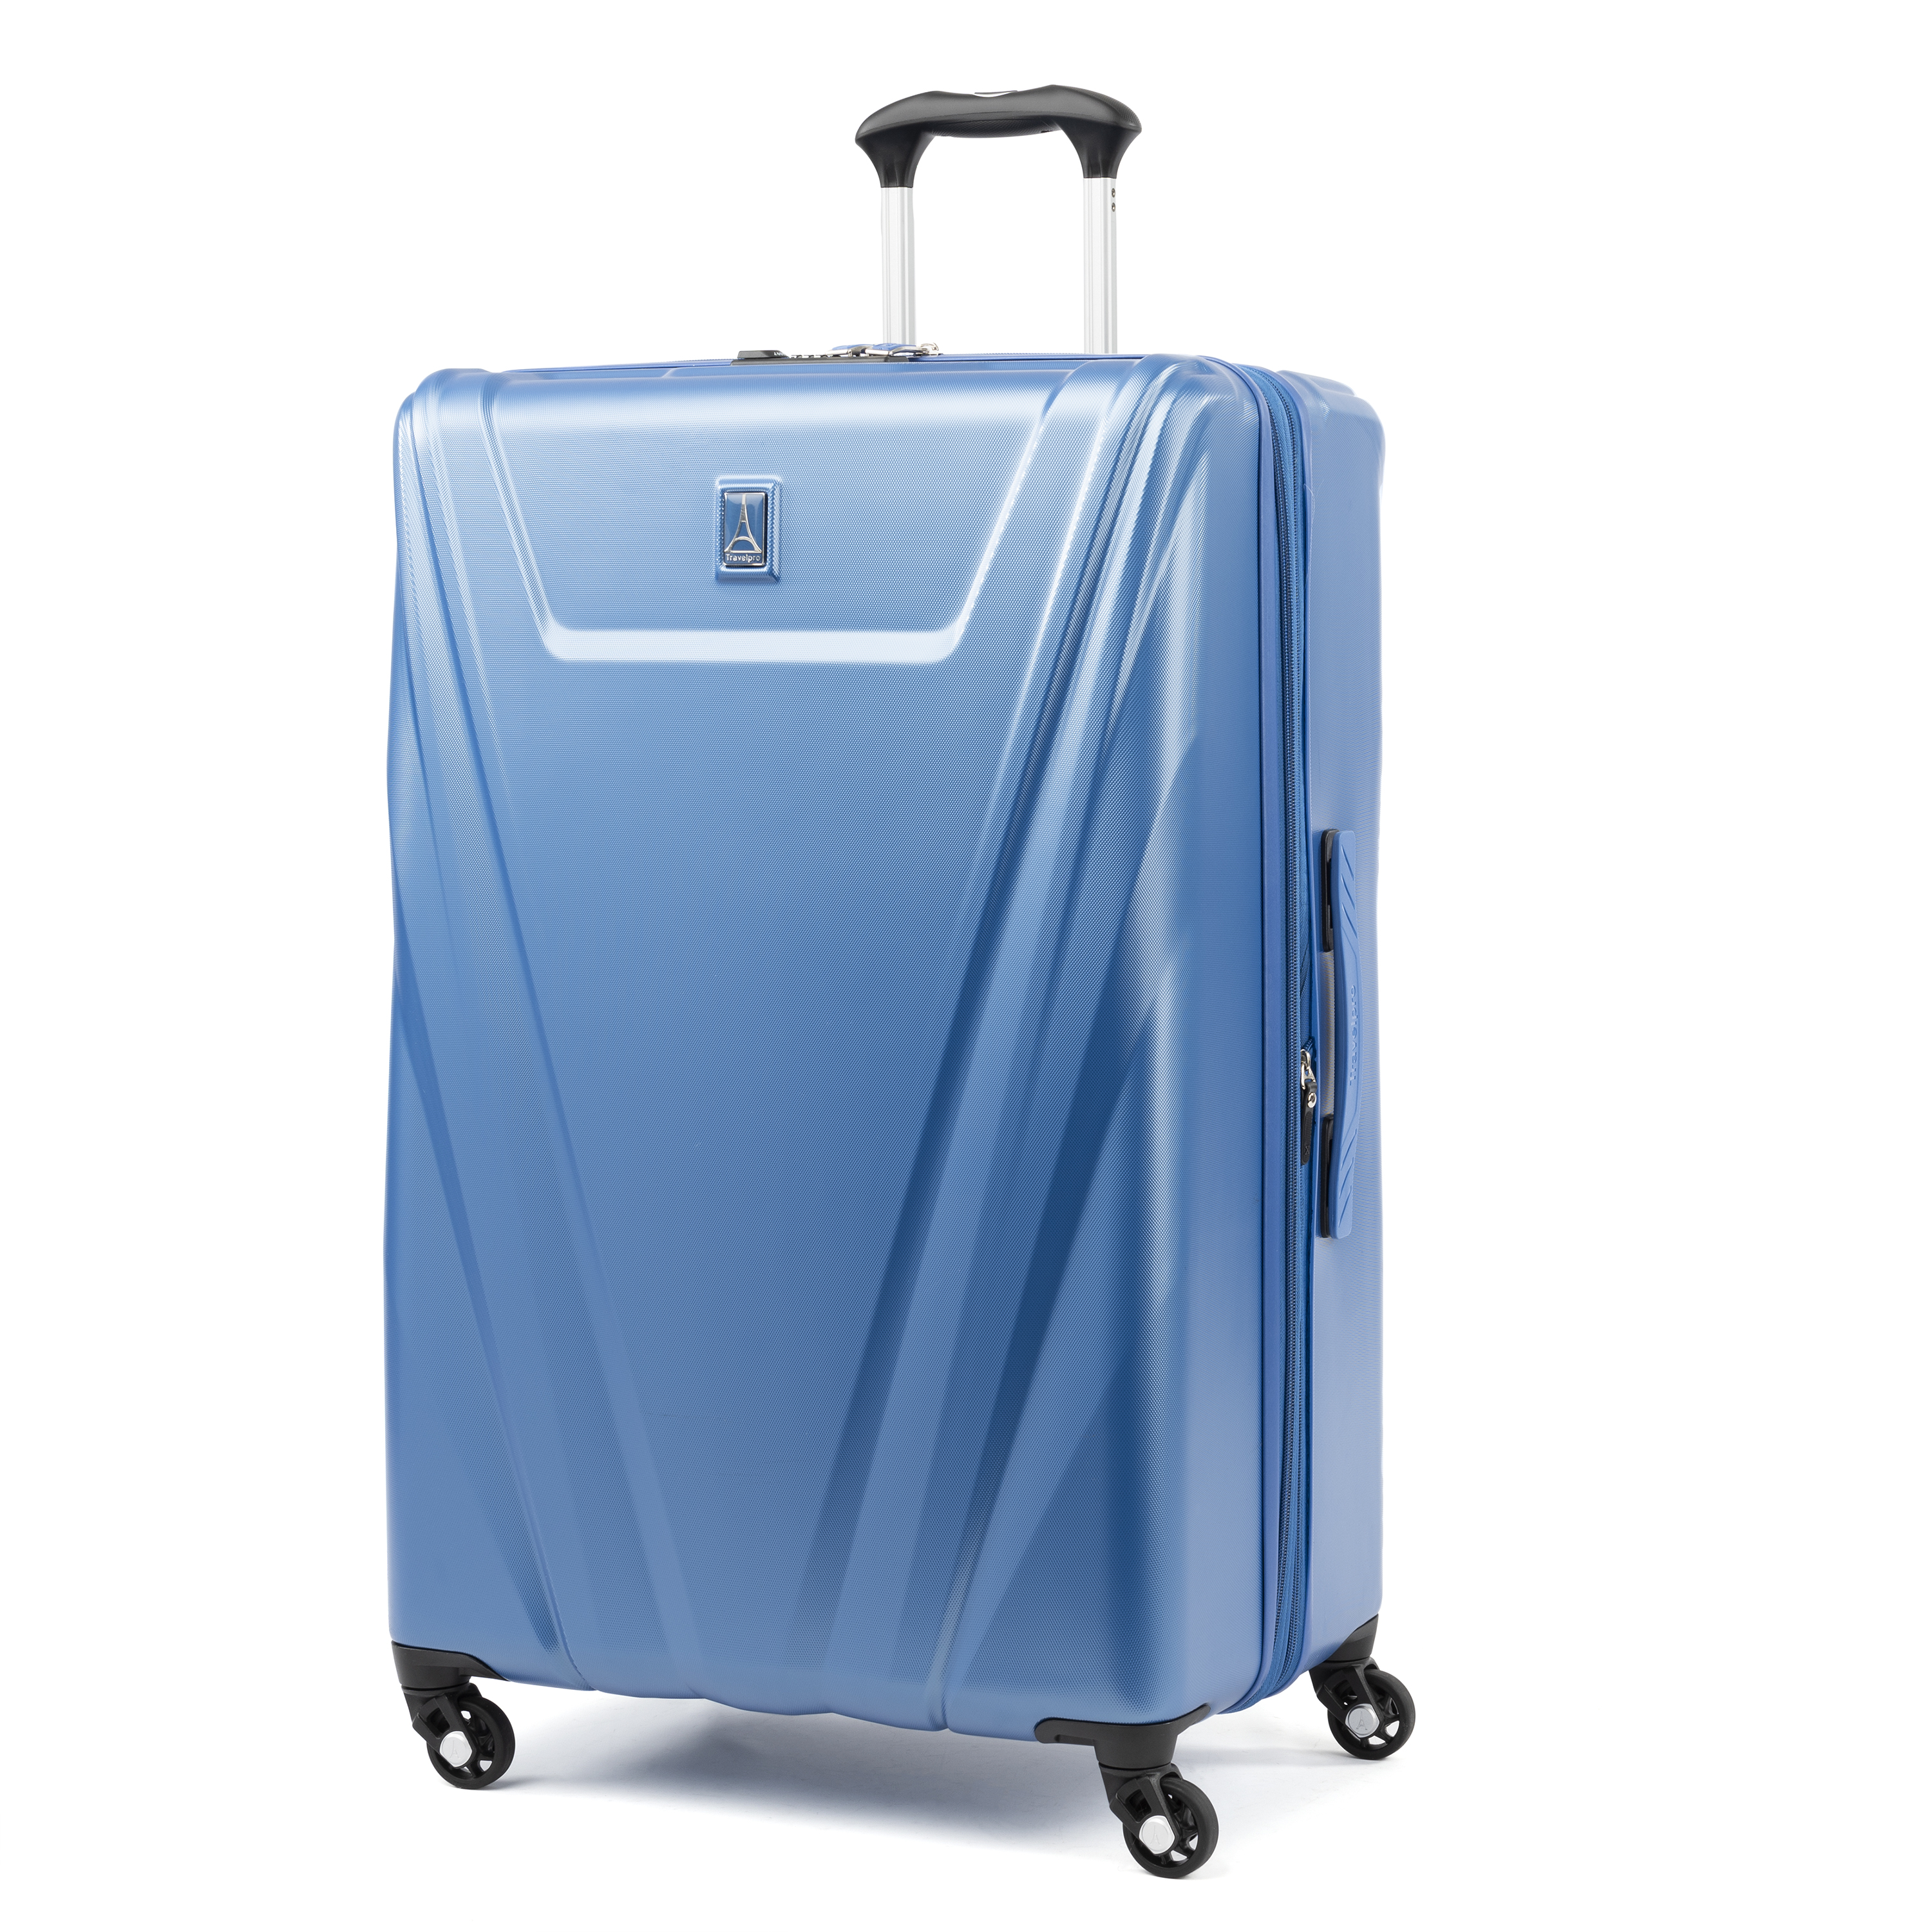 売れ筋介護用品も！ Maxlite Travelpro 5 Pur並行輸入品 Imperial Luggage, Wheel Spinner  Expandable Softside 機内持込み（ハードタイプ） - www.collectiviteslocales.fr